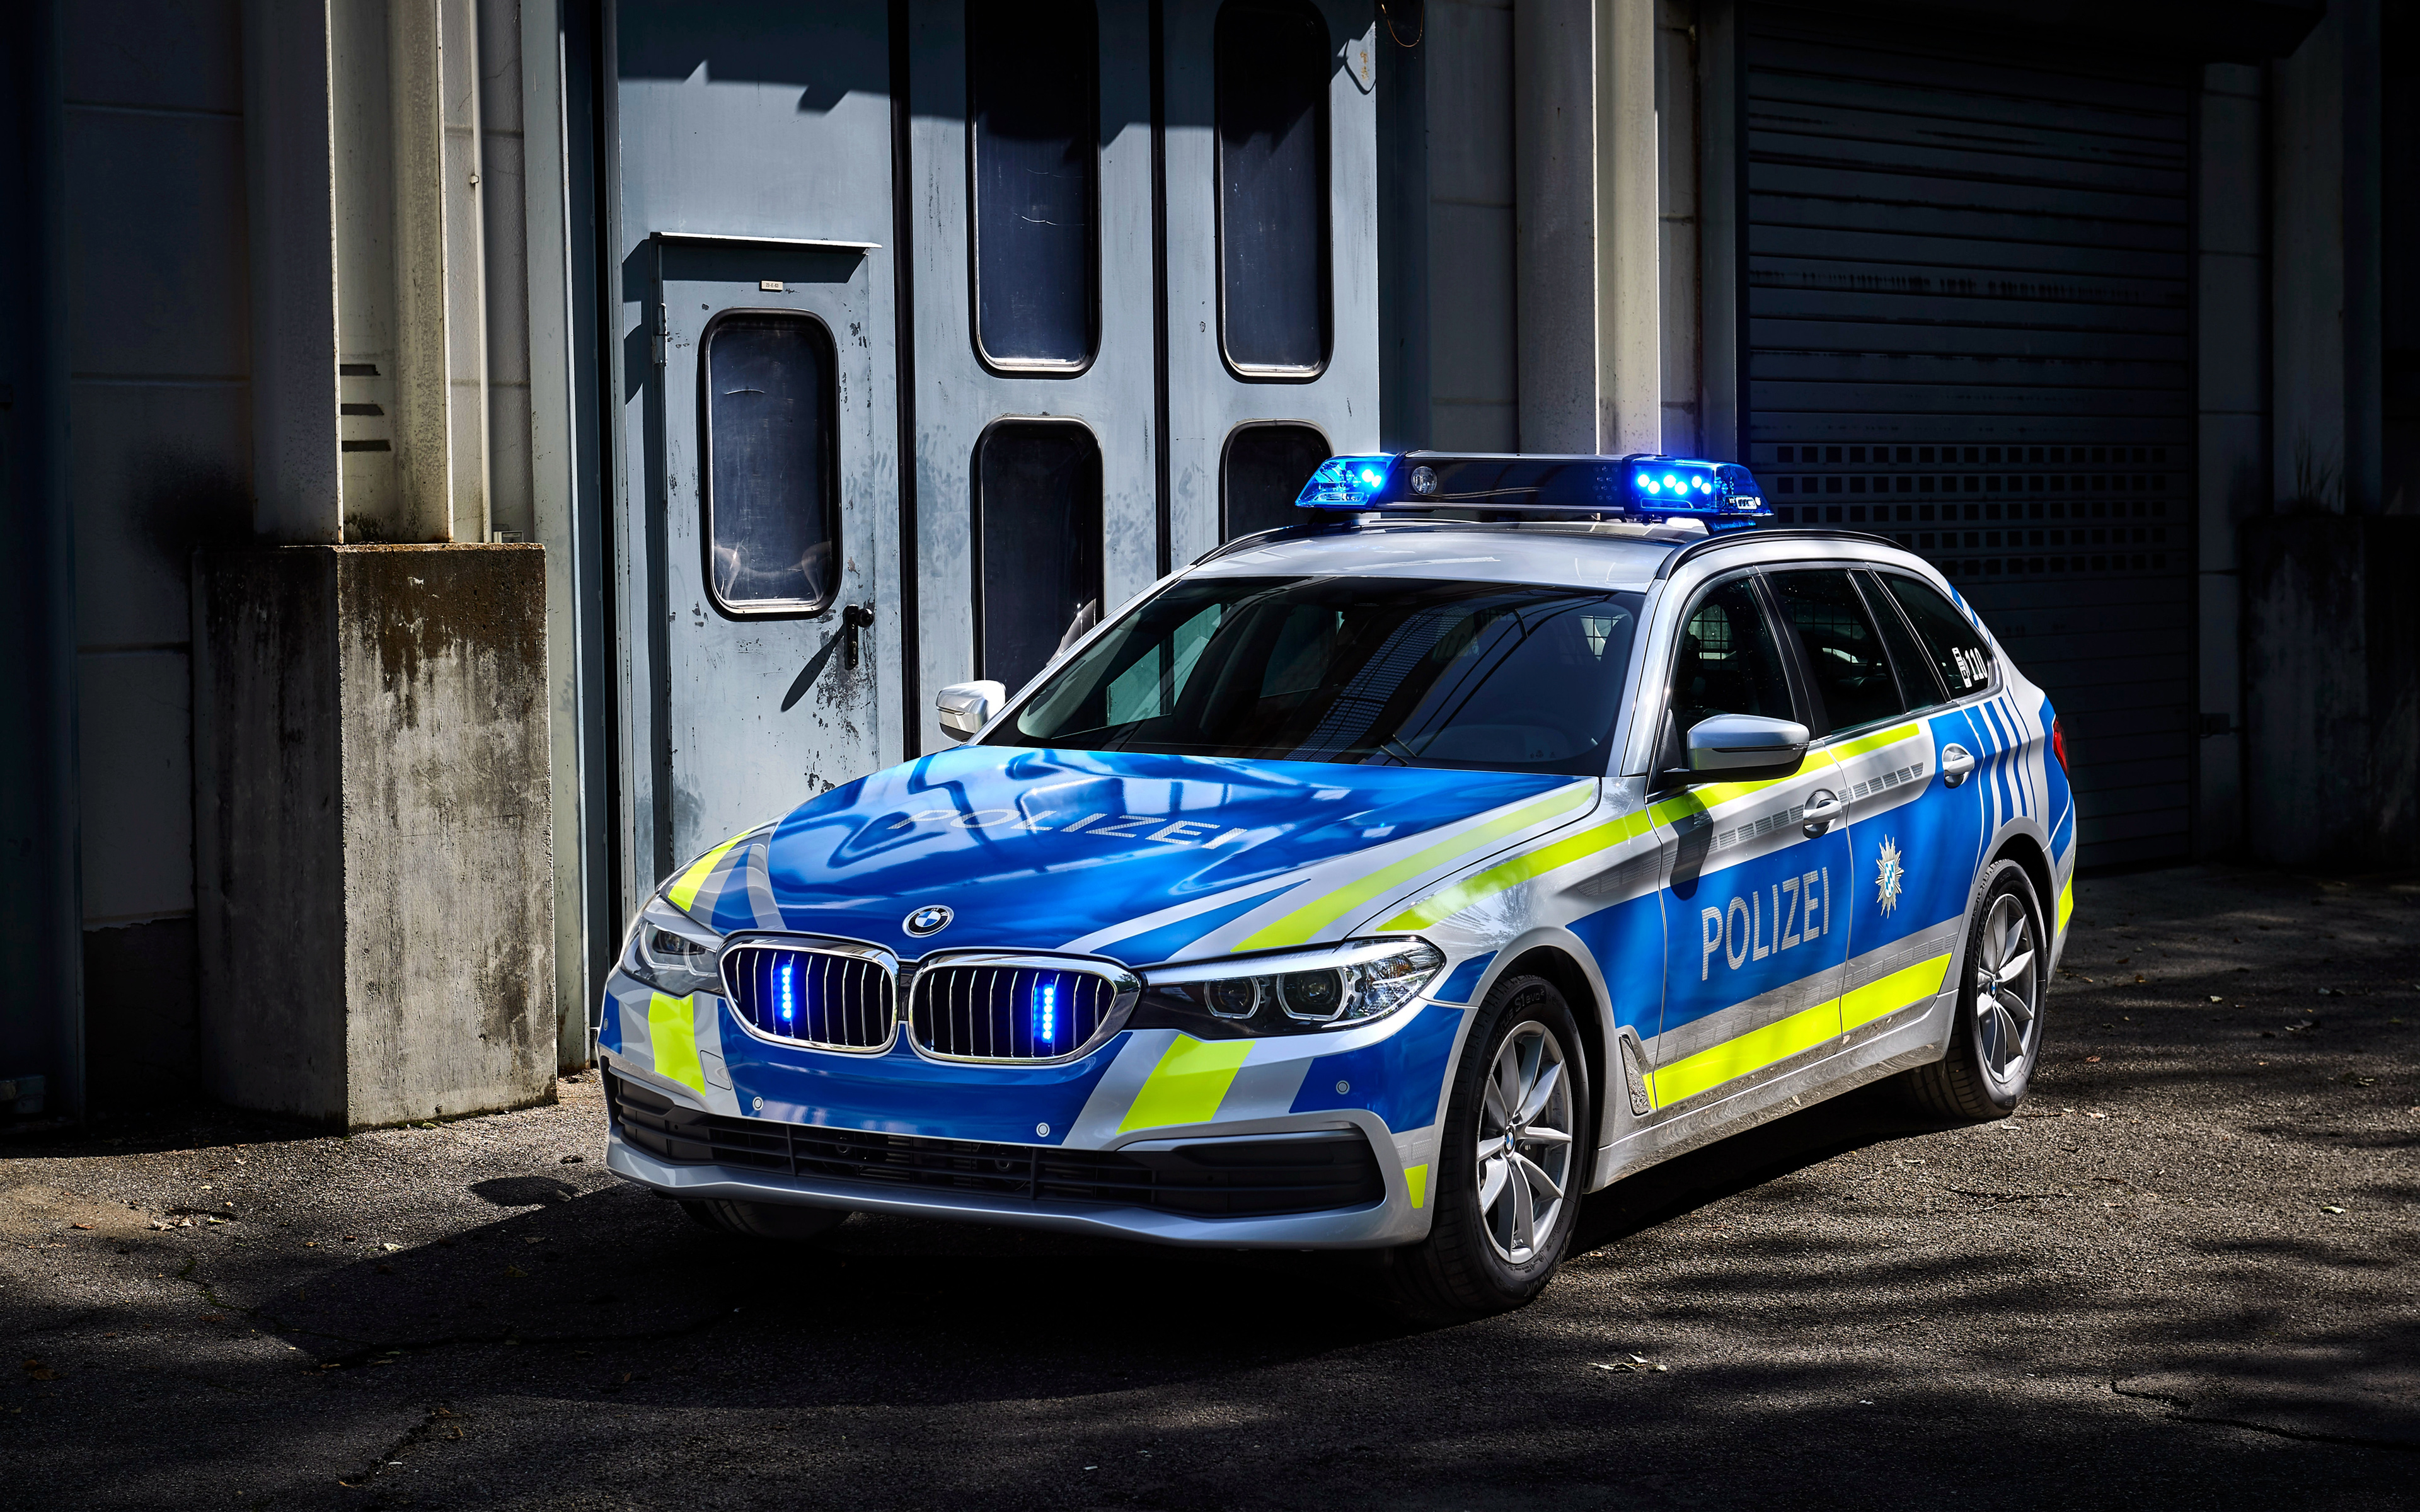 BMW 530d xDrive Touring Polizei 2017 4K8520618139 - BMW 530d xDrive Touring Polizei 2017 4K - xDrive, Touring, Polizei, Maybach, bmw, 530d, 2017